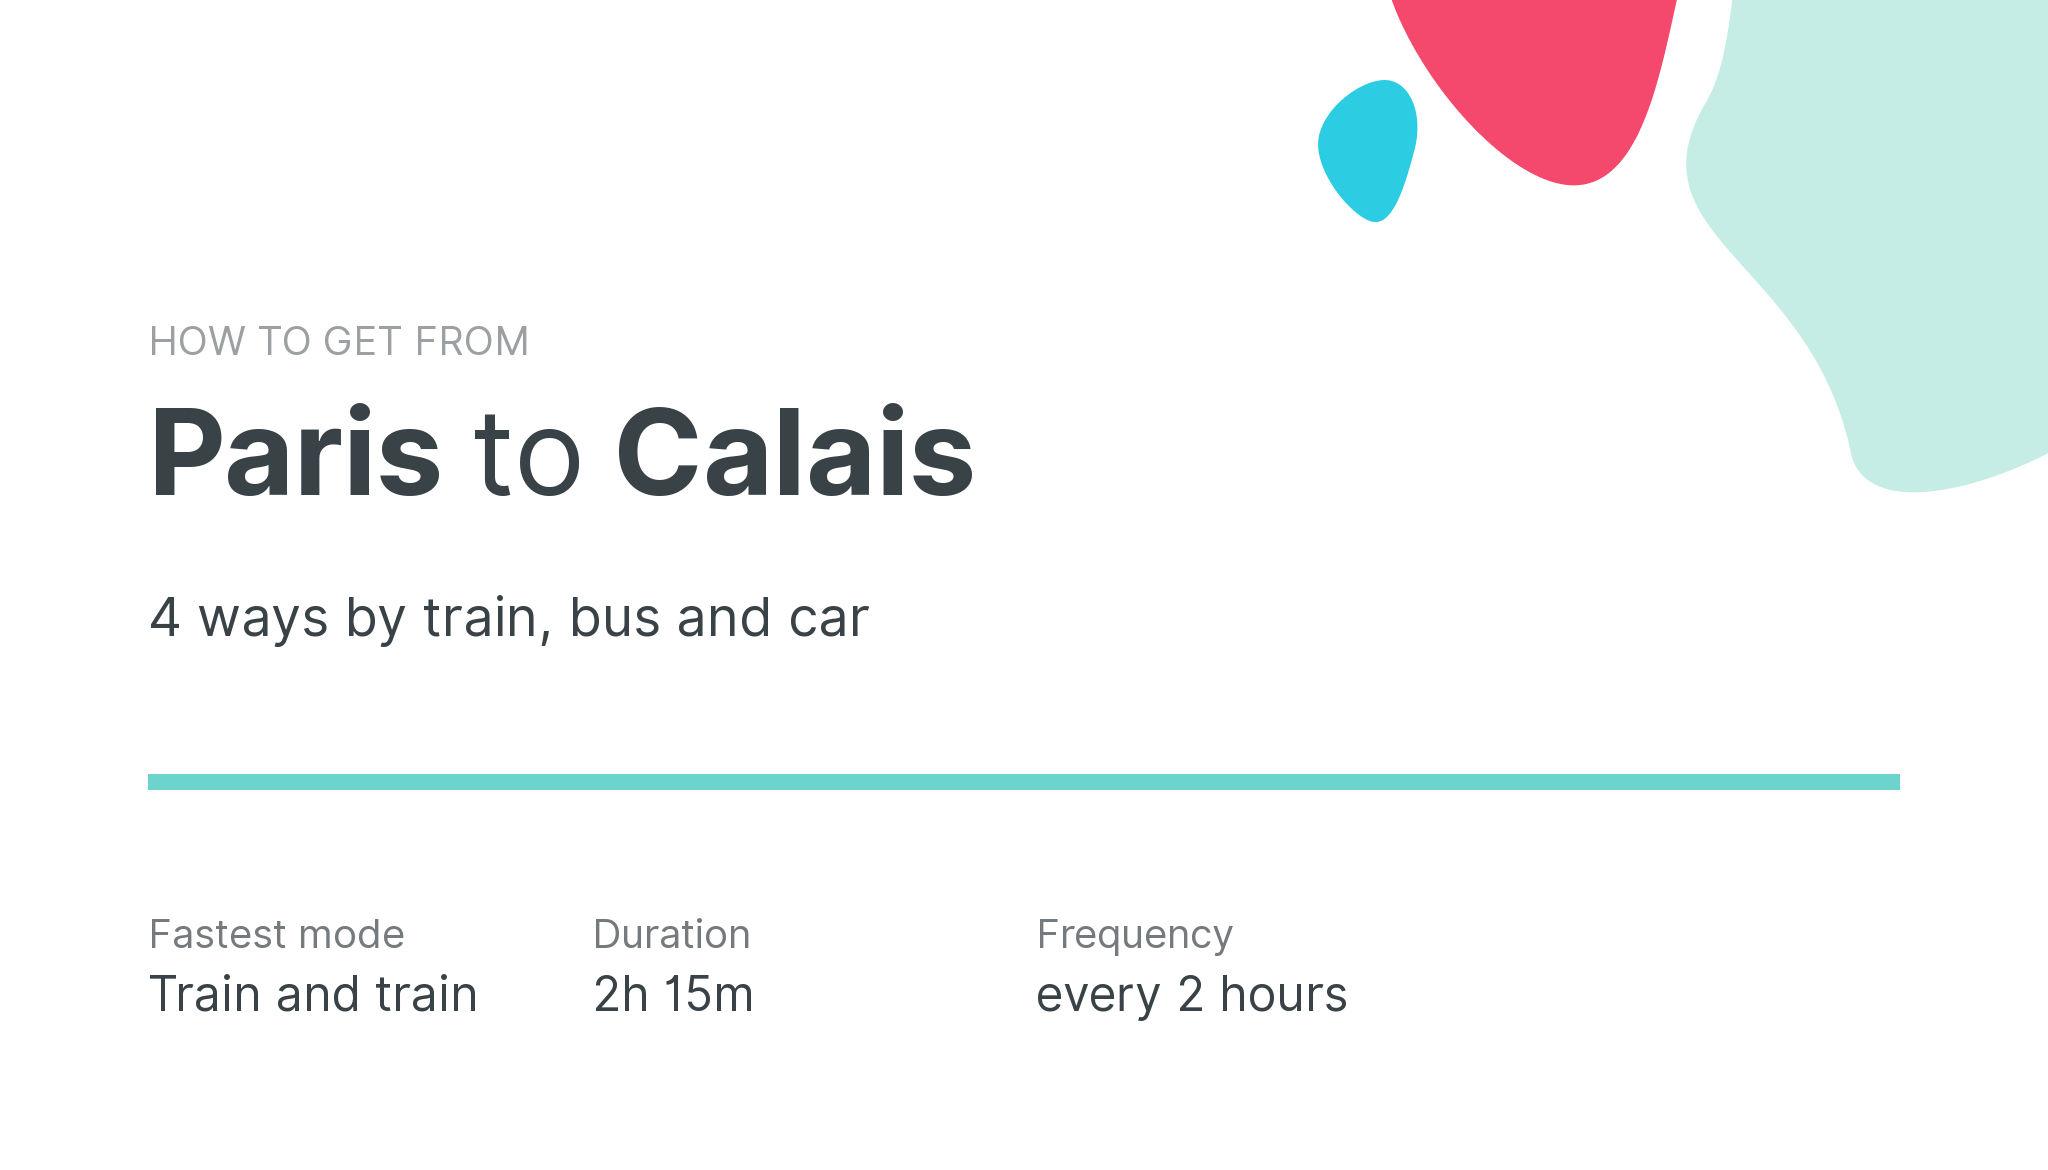 How do I get from Paris to Calais